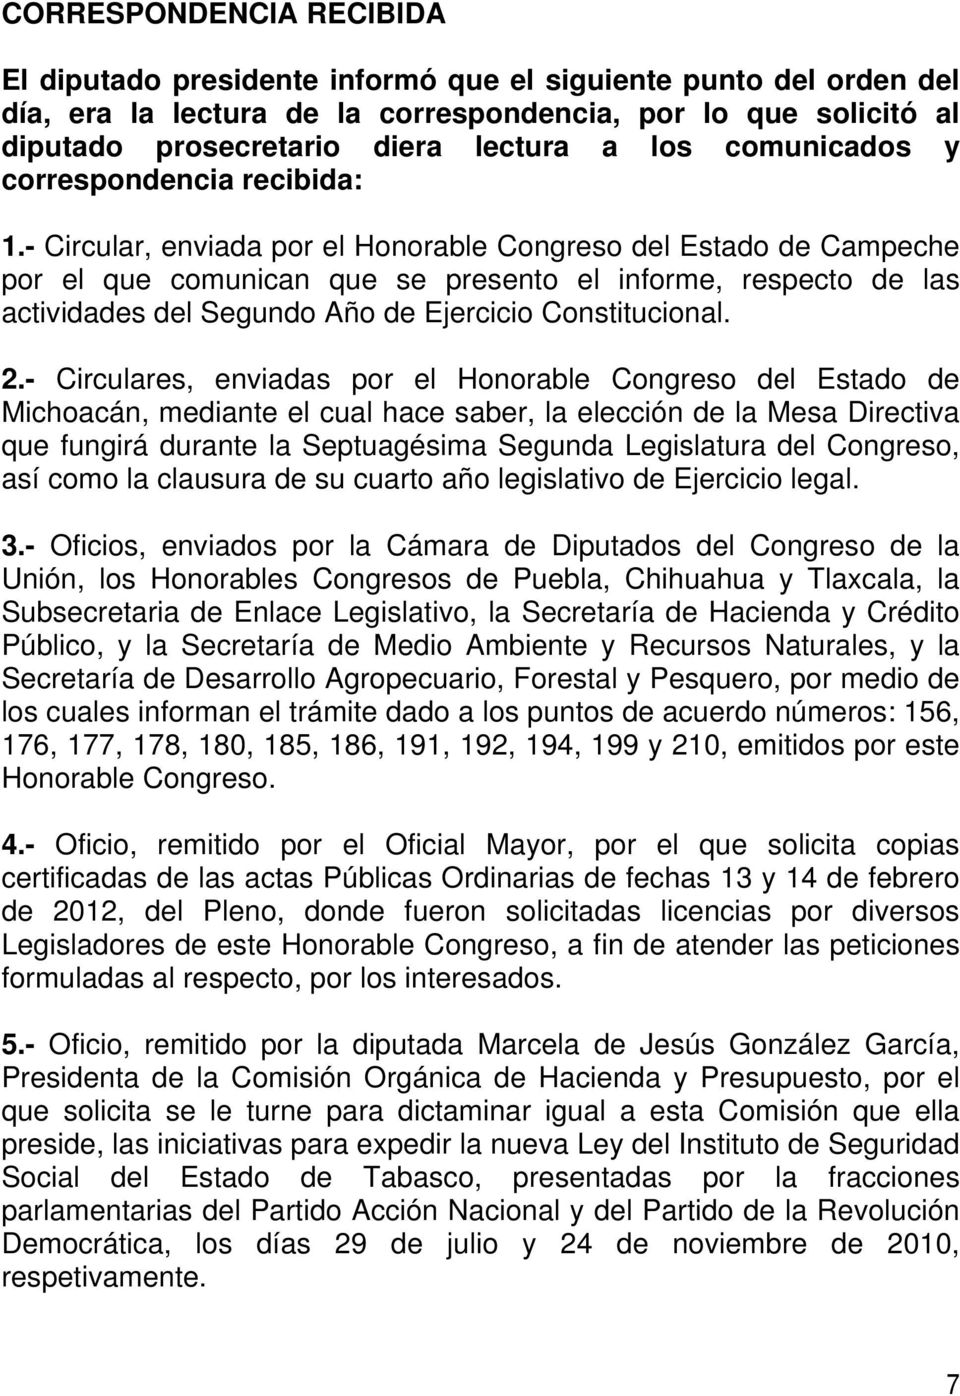 - Circular, enviada por el Honorable Congreso del Estado de Campeche por el que comunican que se presento el informe, respecto de las actividades del Segundo Año de Ejercicio Constitucional. 2.